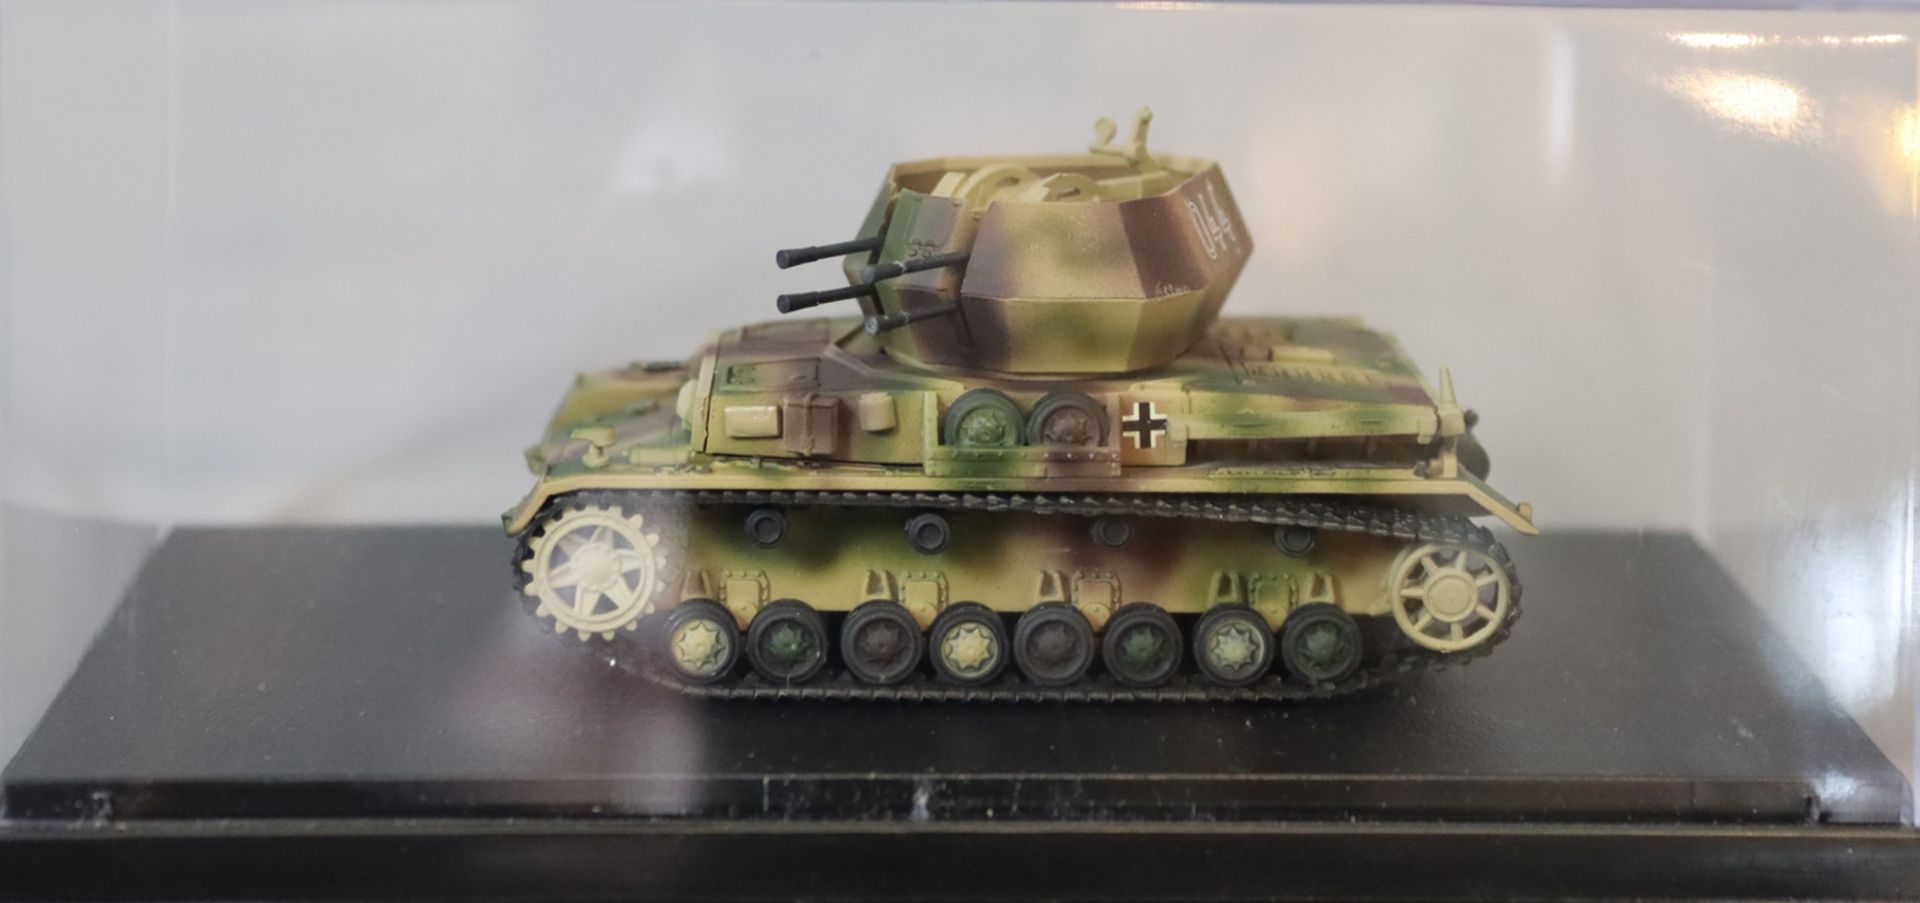 Modell eines Panzers 3. Reich  - Bild 2 aus 2